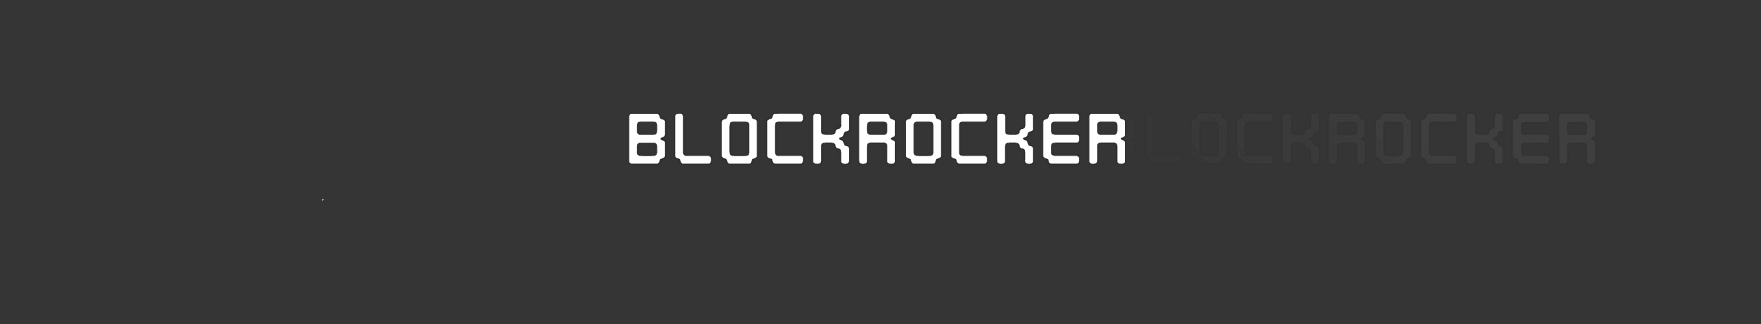 Blockrocker 横幅